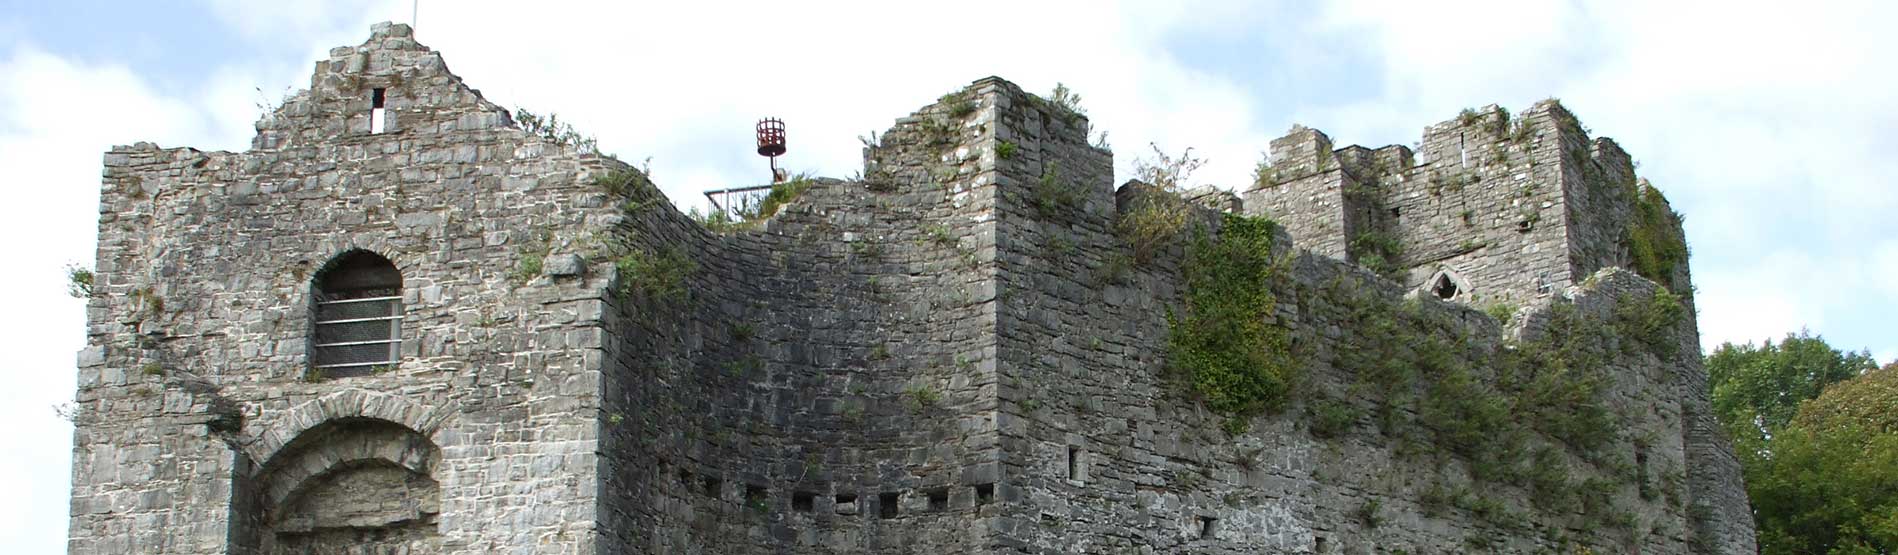 image of a castle